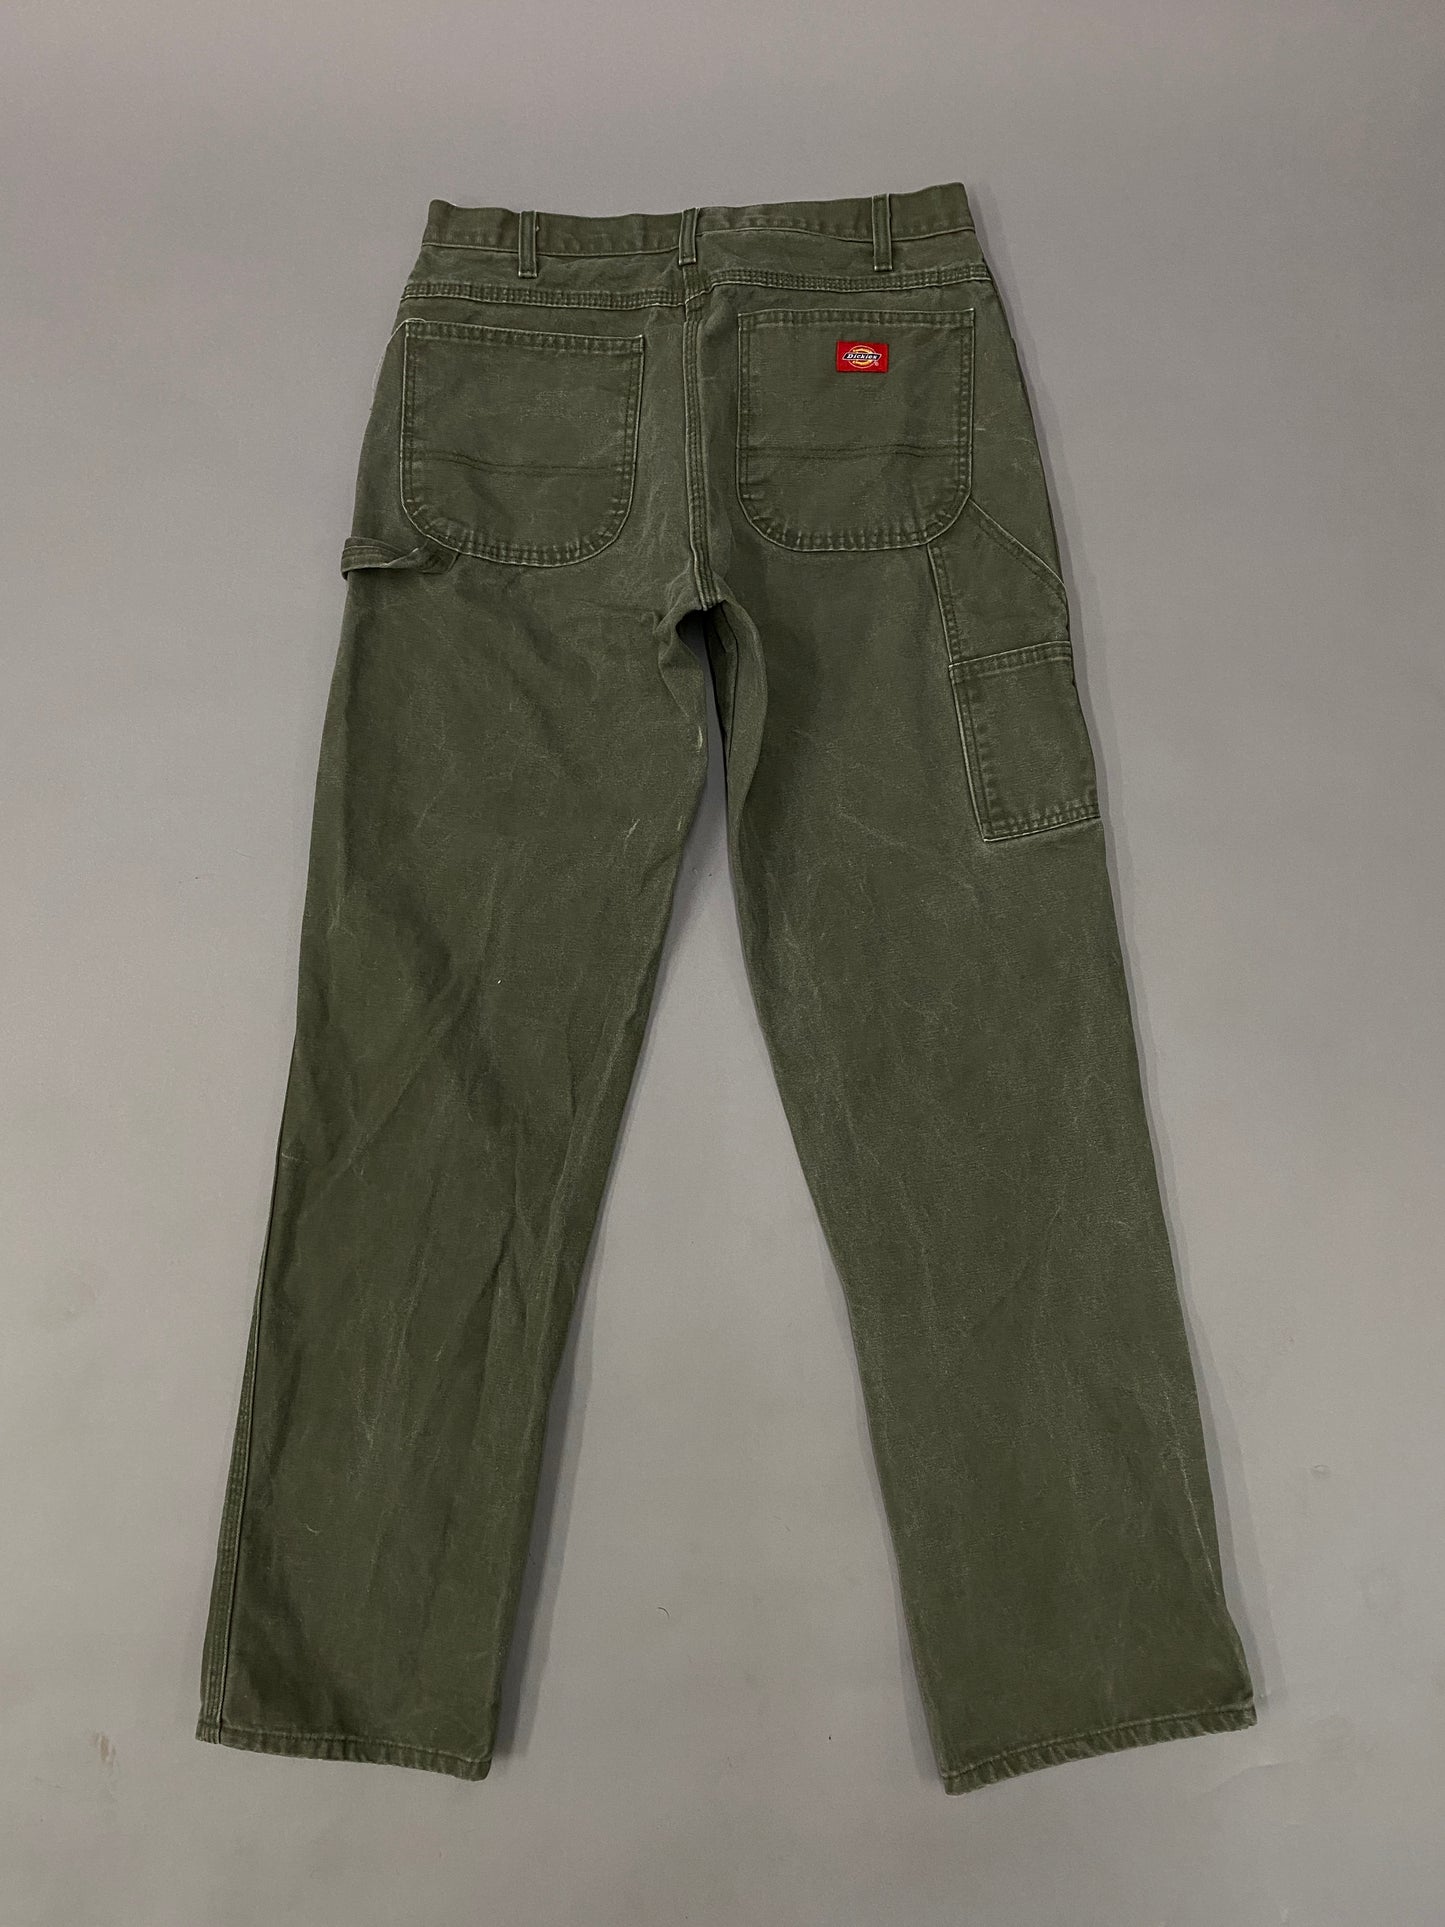 Dickies Vintage Carpenter Jeans - 33